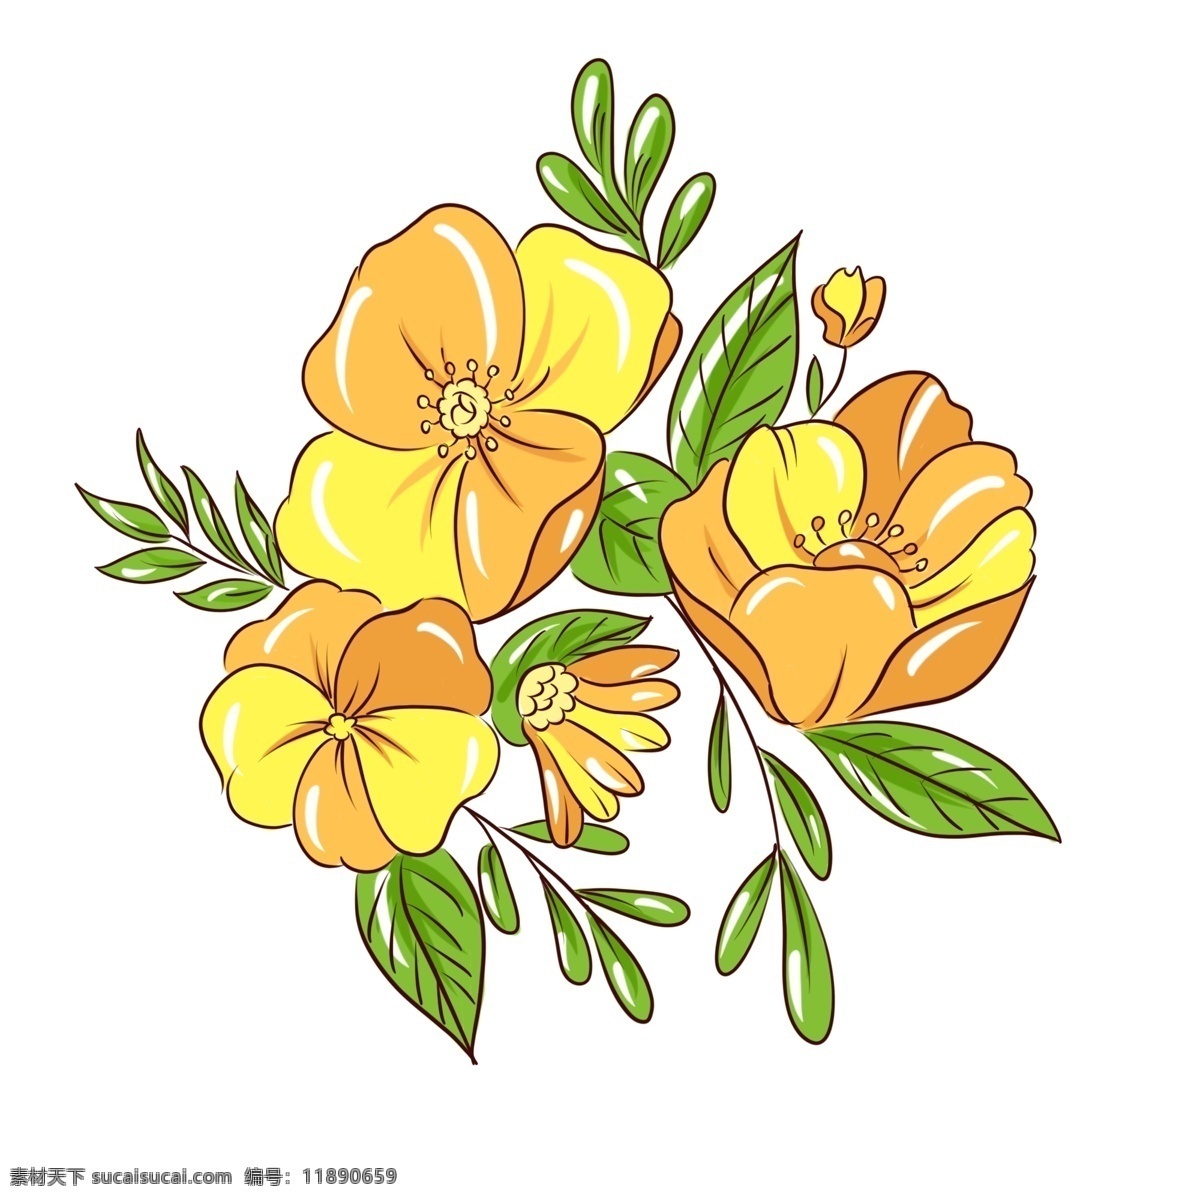 手绘 植物 花卉 黄色 花束 商用 手绘植物 手绘花卉 植物花卉 花草树木 手绘花草 手绘花束